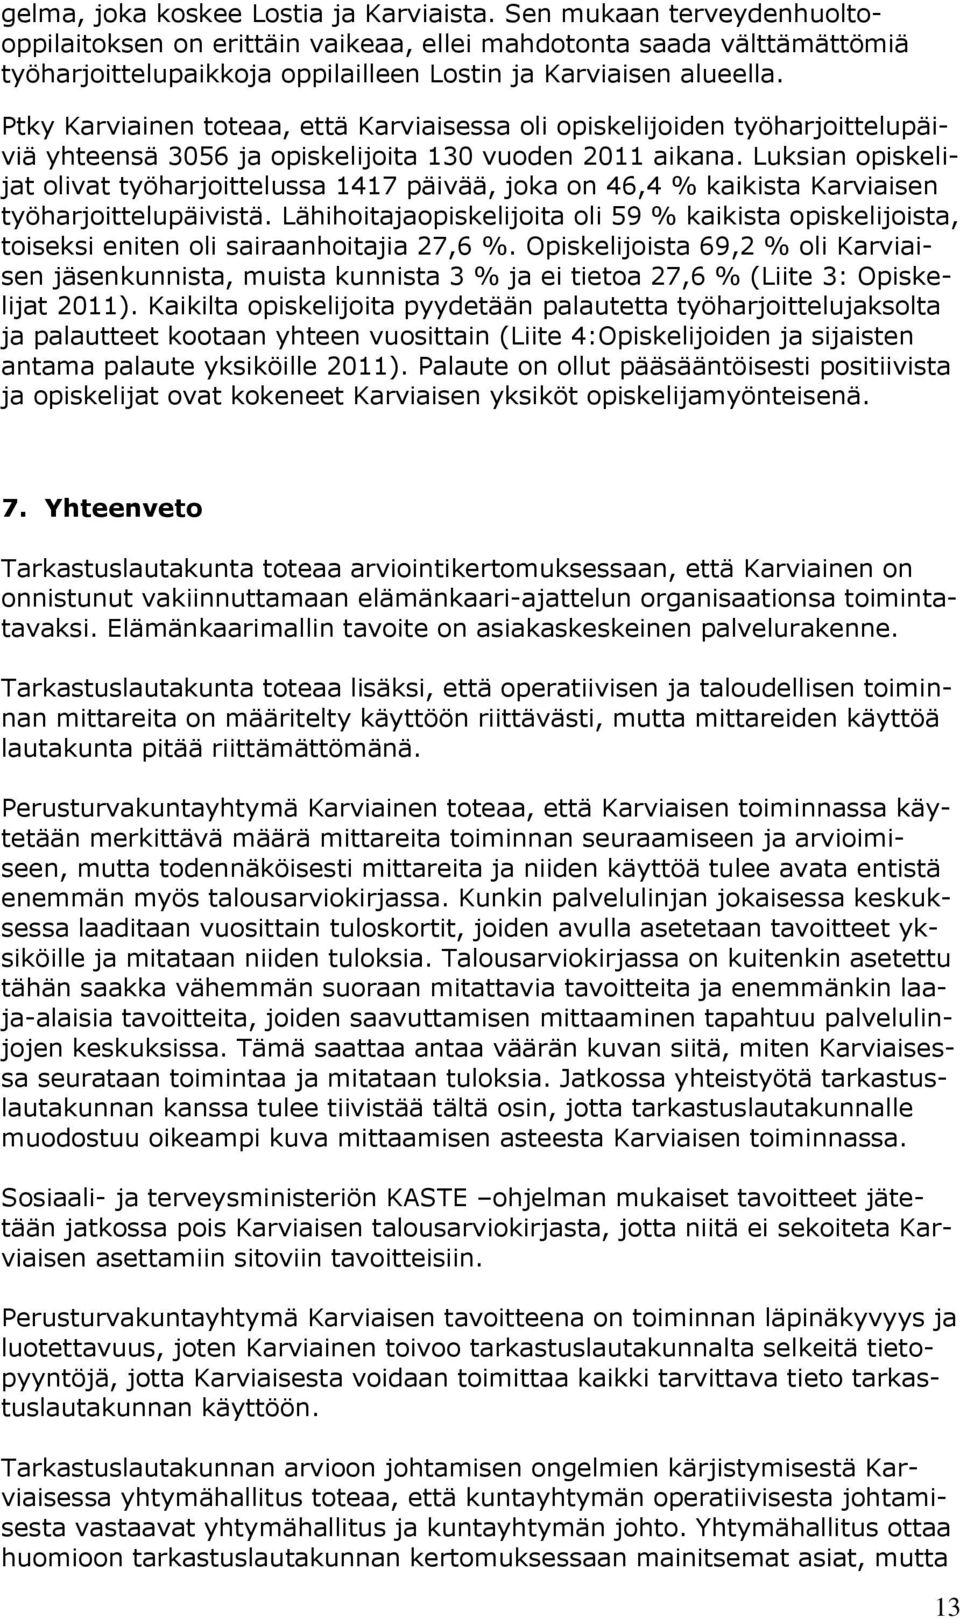 Ptky Karviainen toteaa, että Karviaisessa oli opiskelijoiden työharjoittelupäiviä yhteensä 3056 ja opiskelijoita 130 vuoden 2011 aikana.